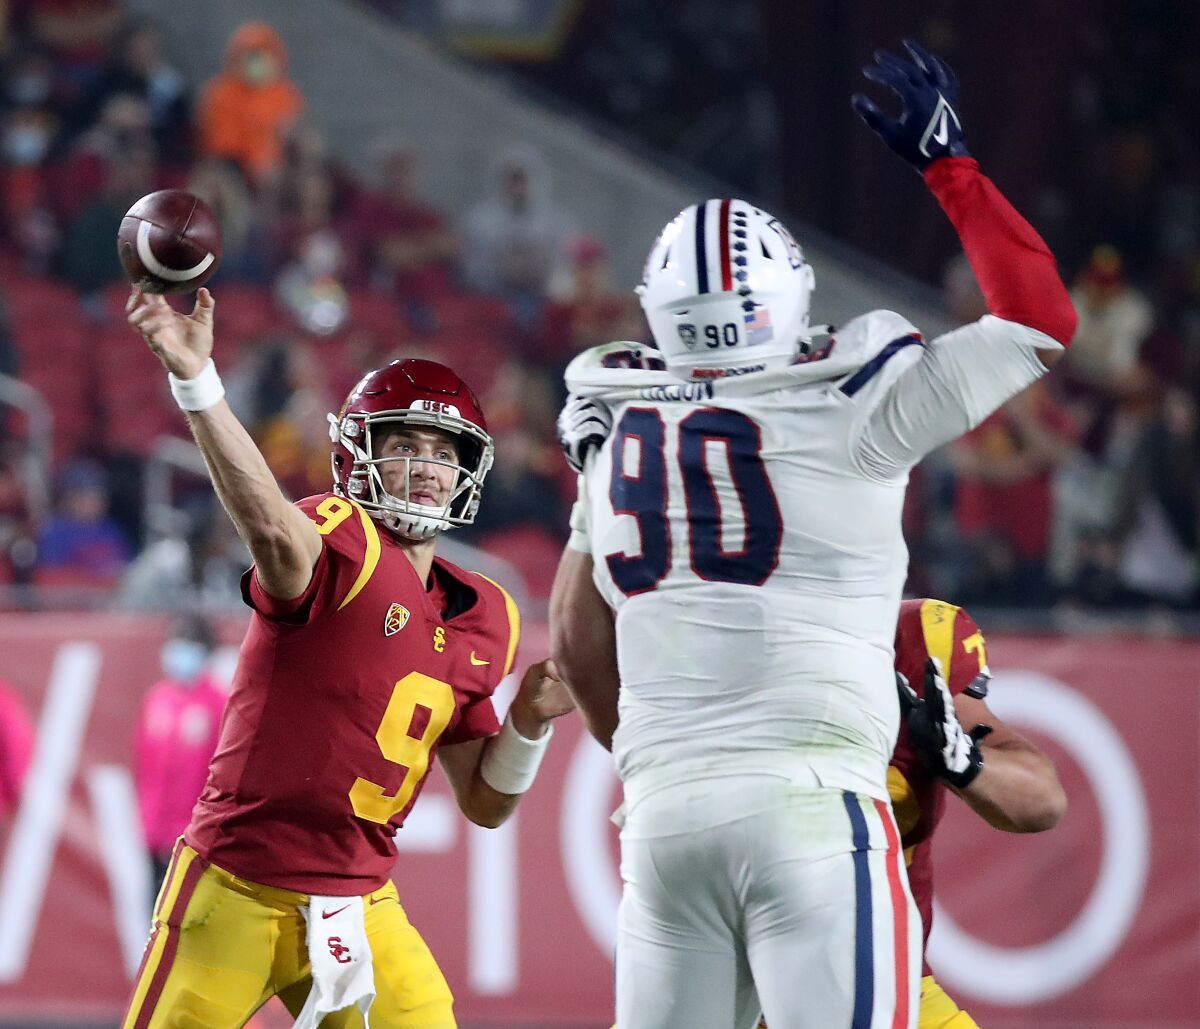 USC quarterback Kedon Slovis throws a pass against Arizona.